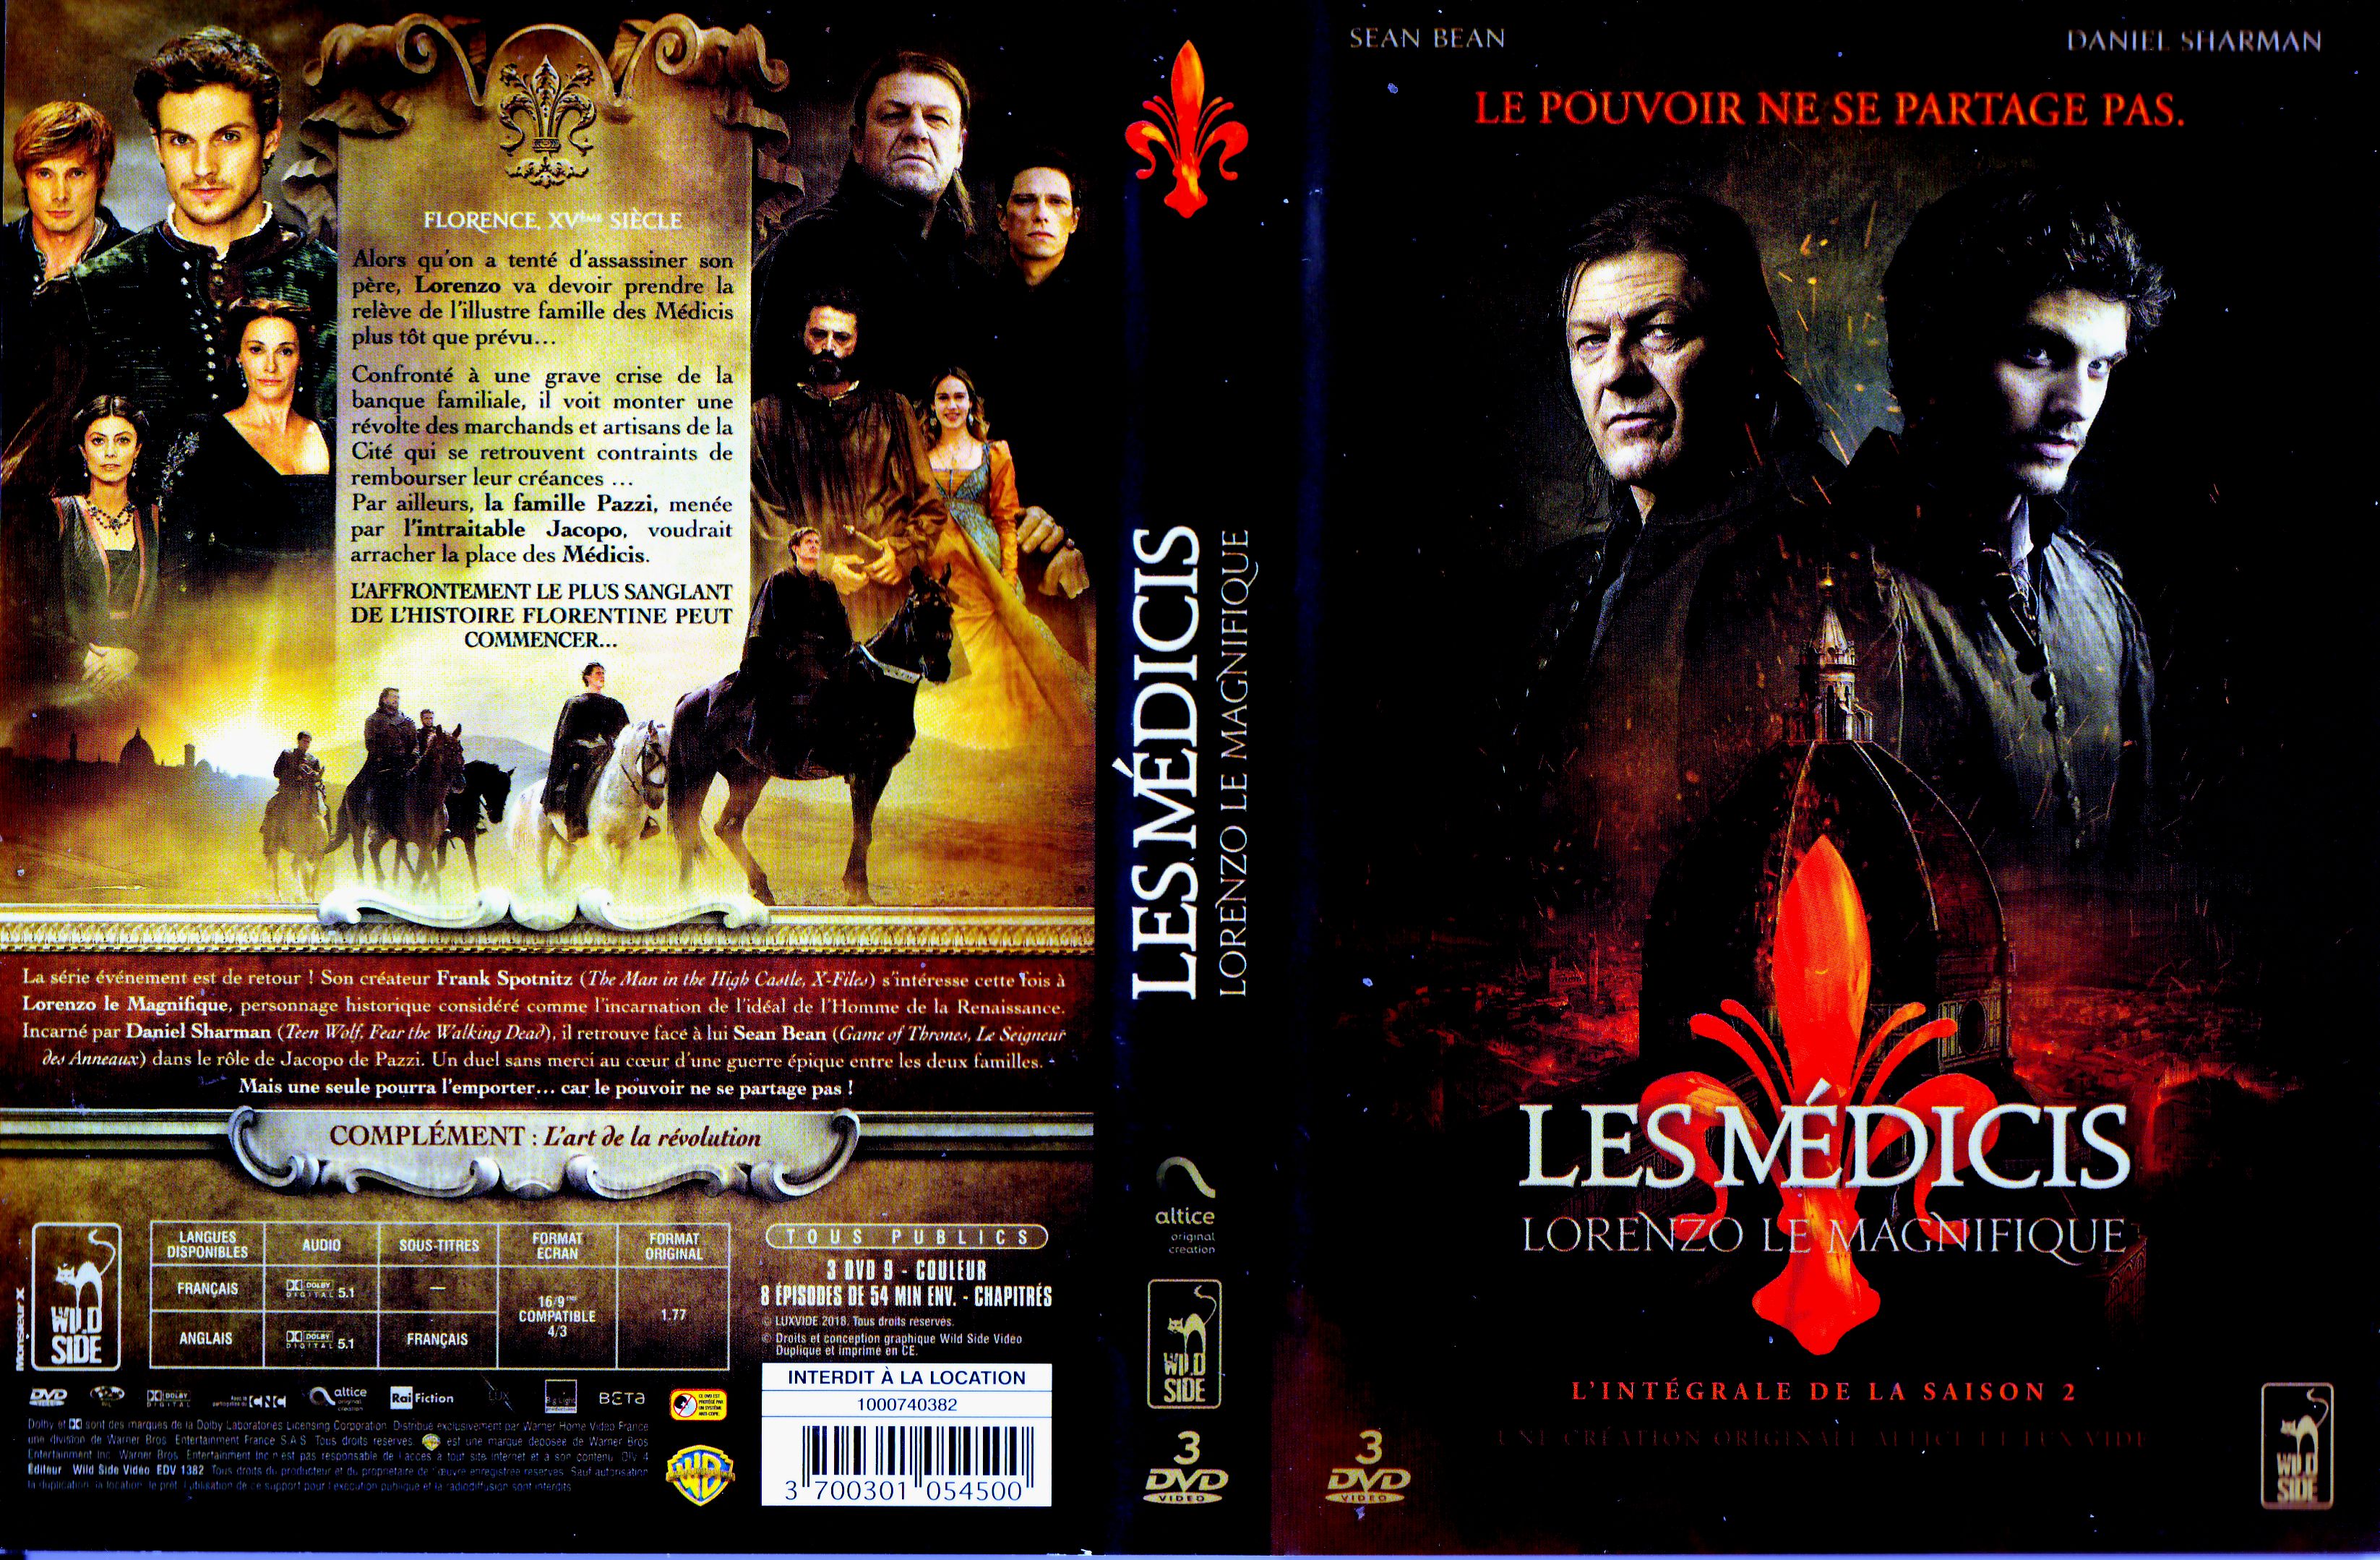 Jaquette DVD Les Medicis Lorenzo le magnifique saison 2